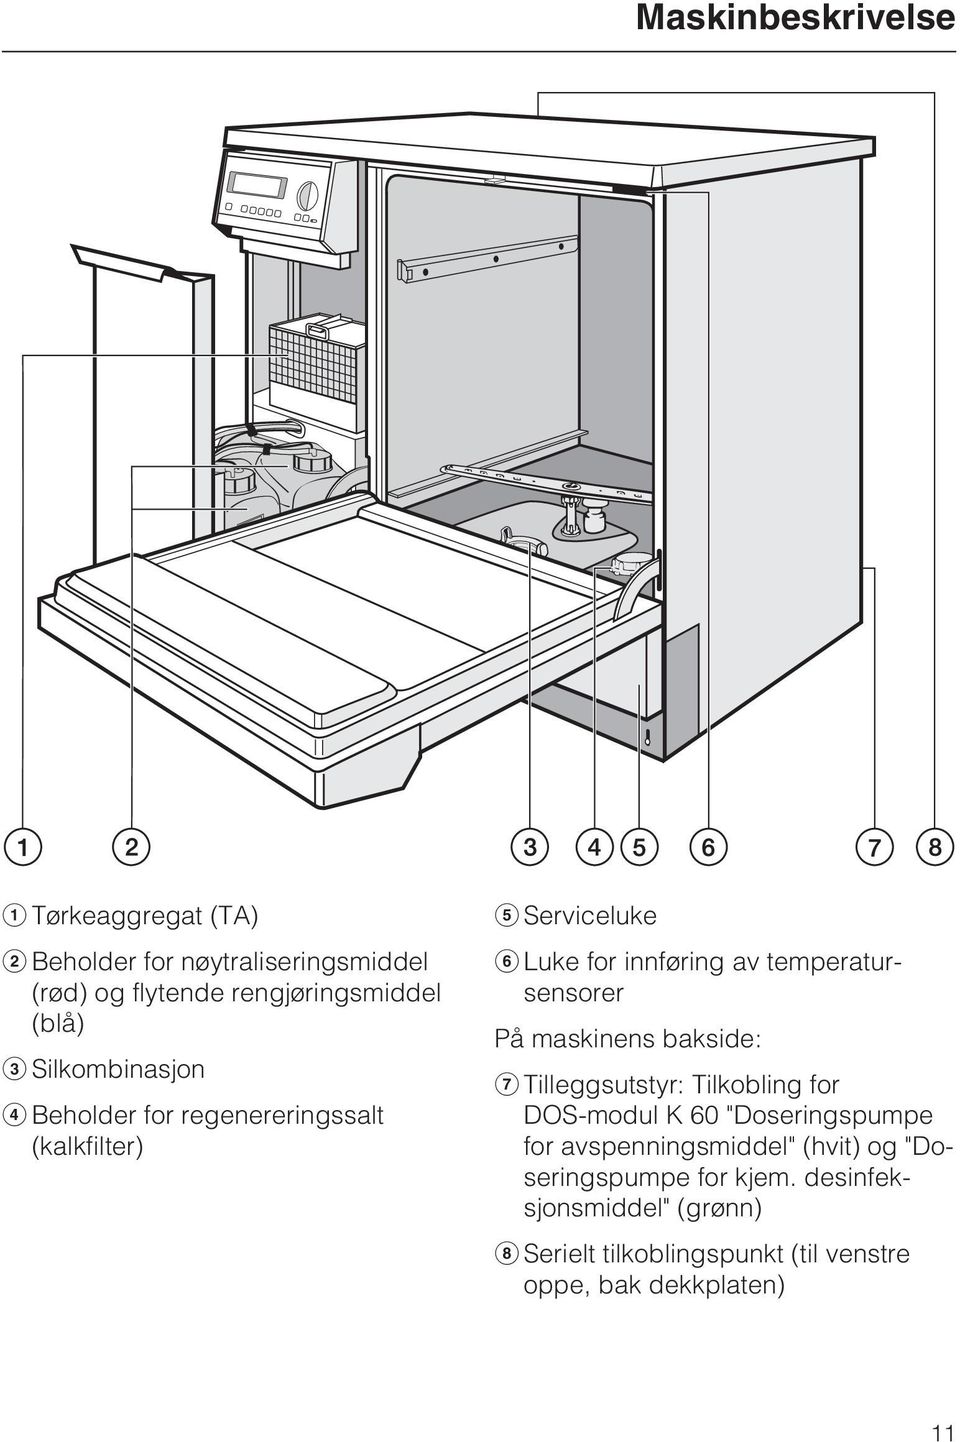 temperatursensorer På maskinens bakside: g Tilleggsutstyr: Tilkobling for DOS-modul K 6 "Doseringspumpe for